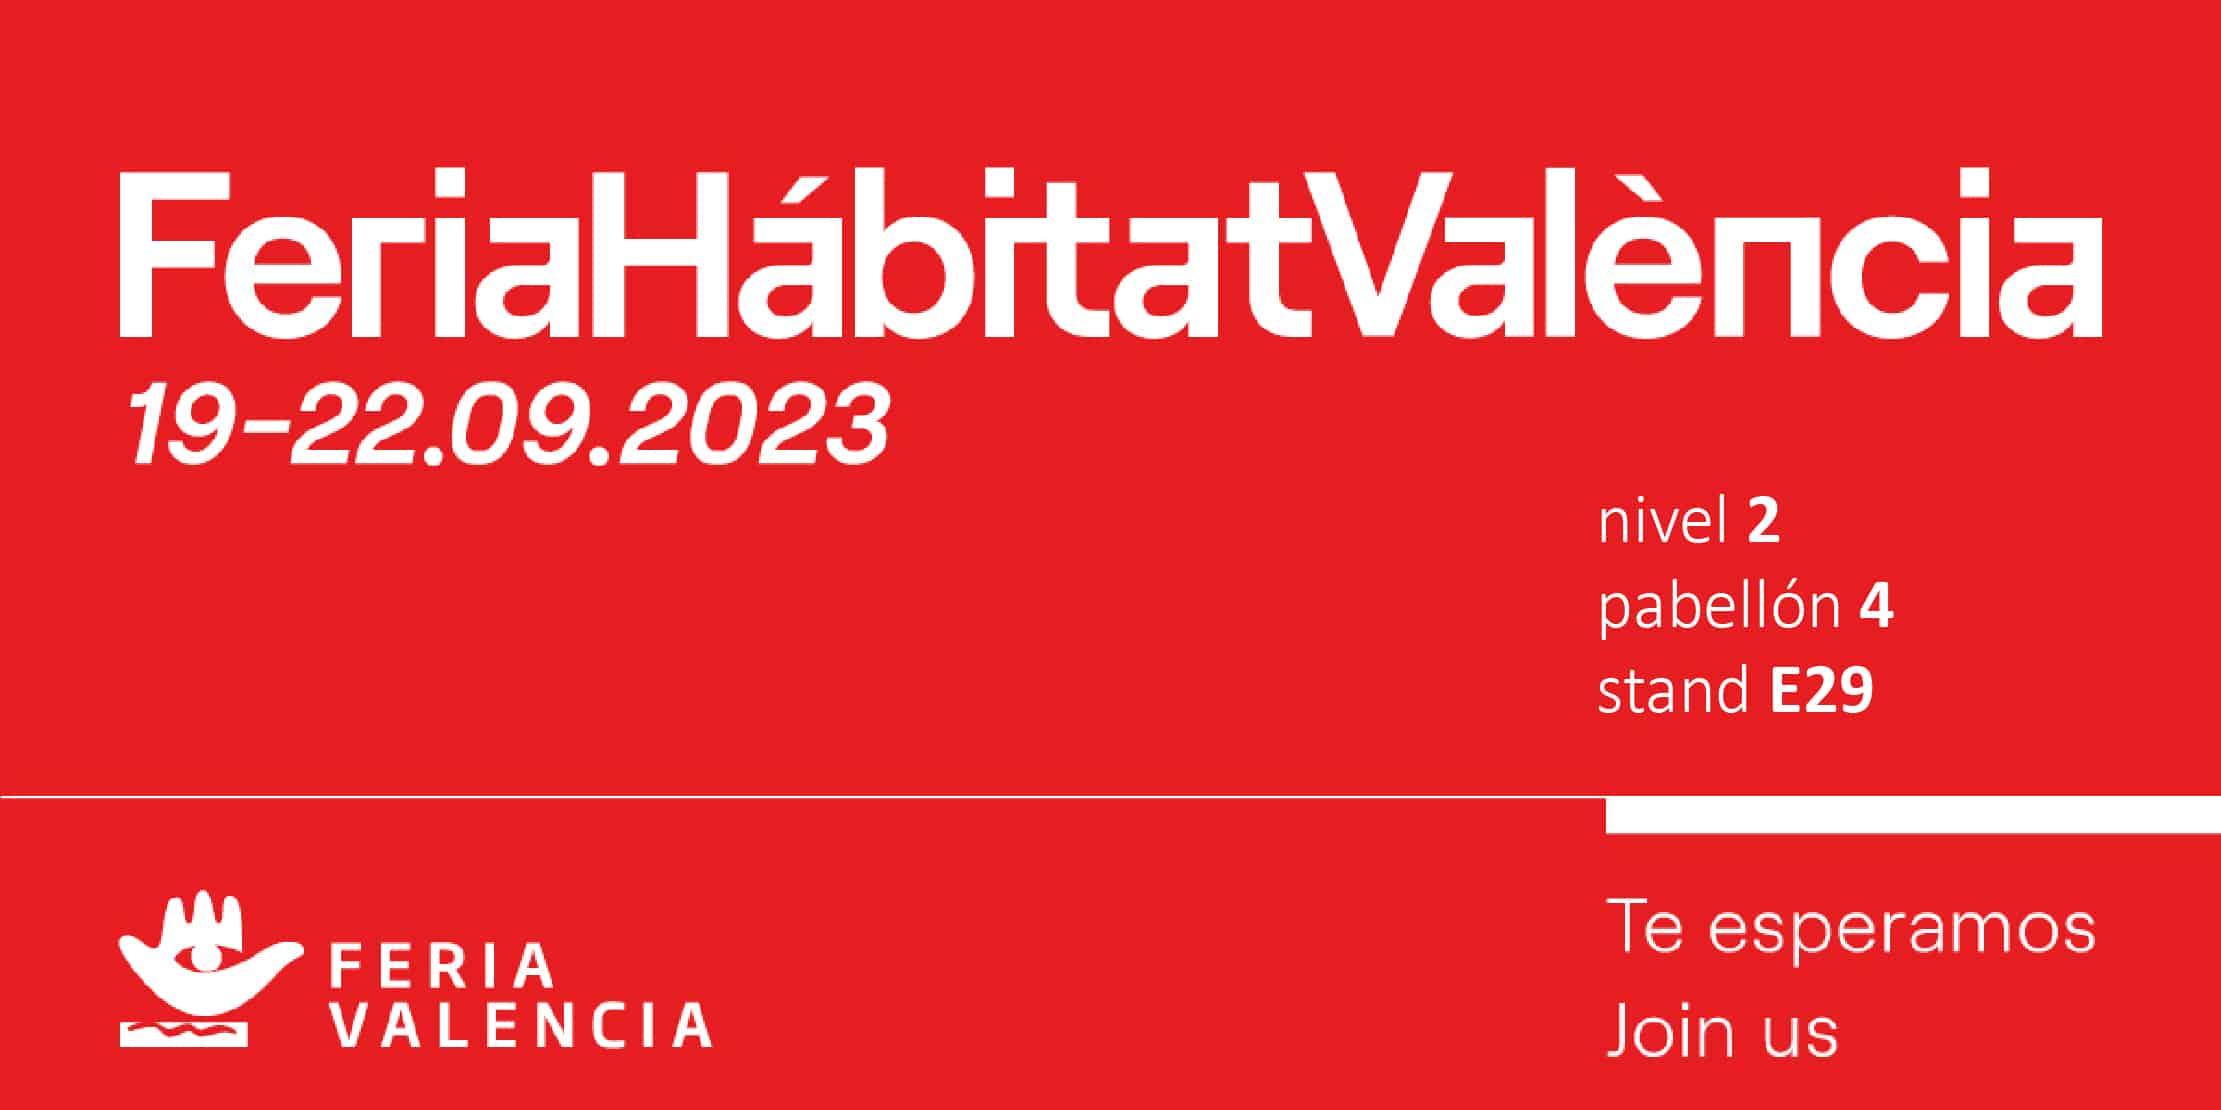 feria habitat valencia 2023